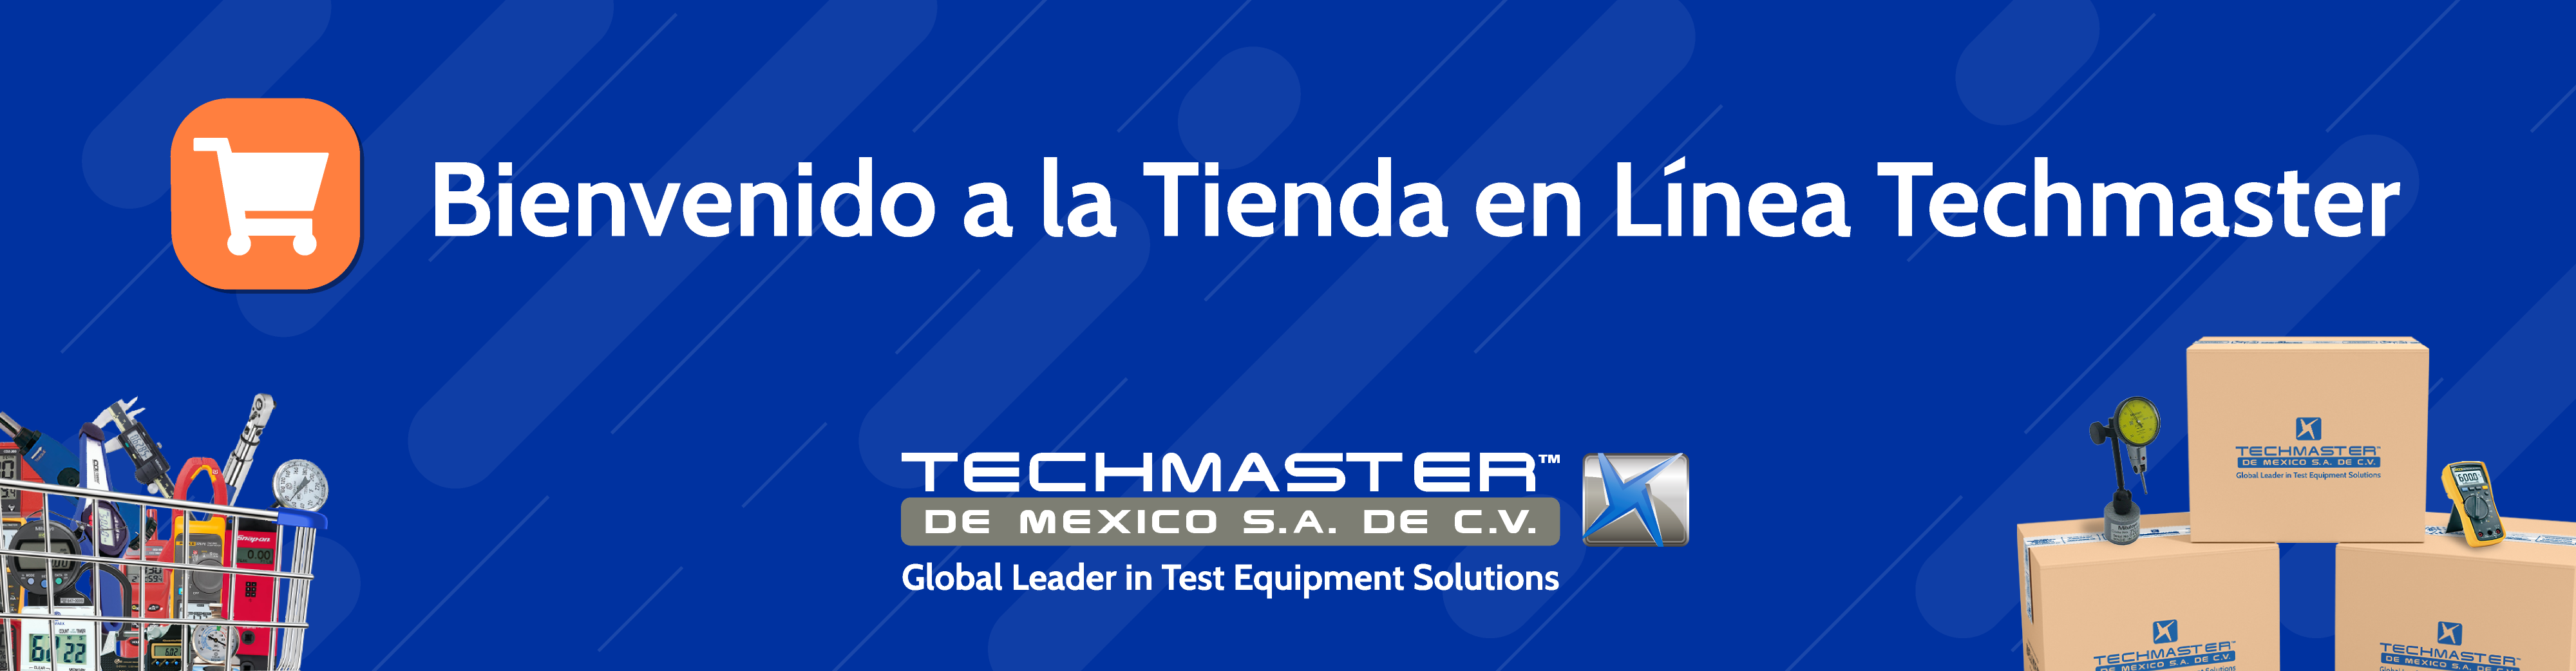 Juego de pinzas cocodrilo AC175 - Techmaster de Mexico